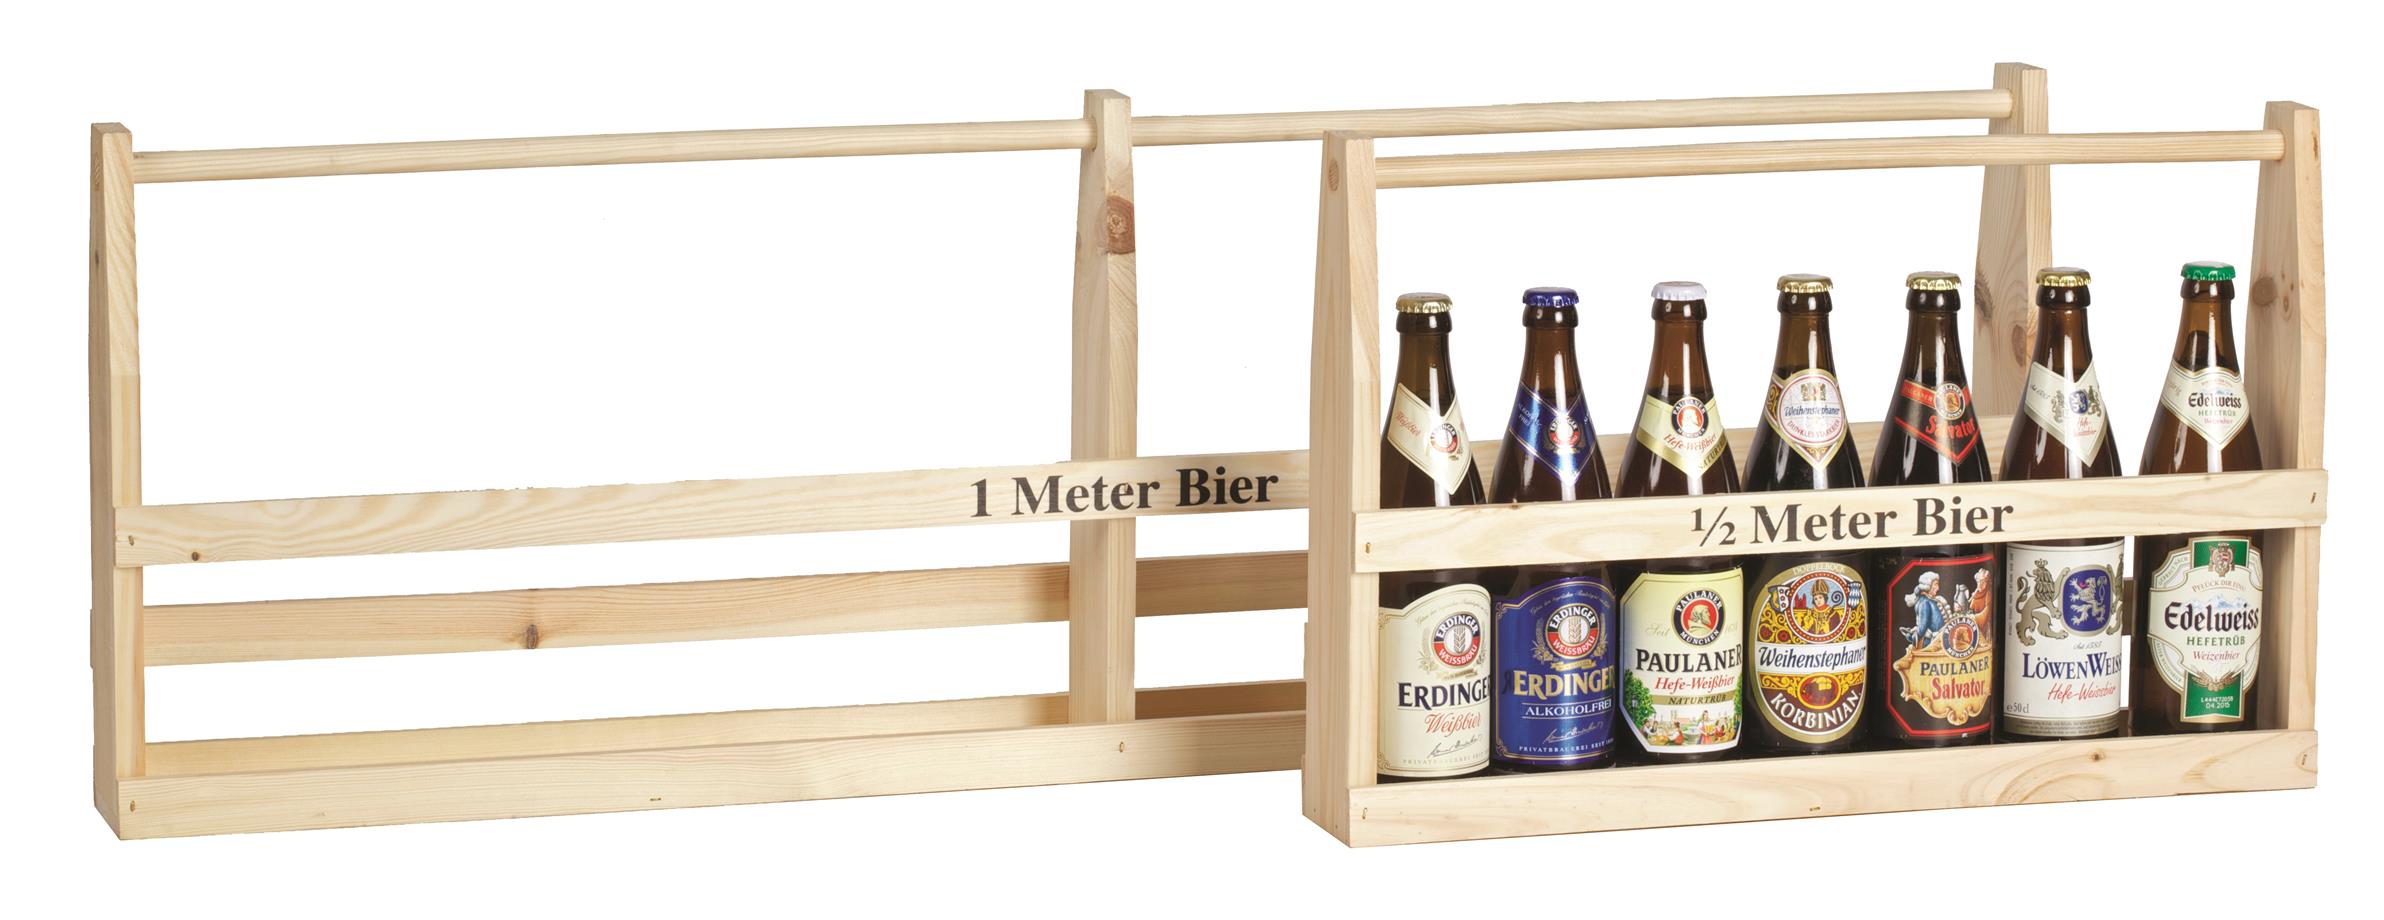 Picture of Houten rek 1/2 meter bier voor 7 flesjes (0,50 ltr)